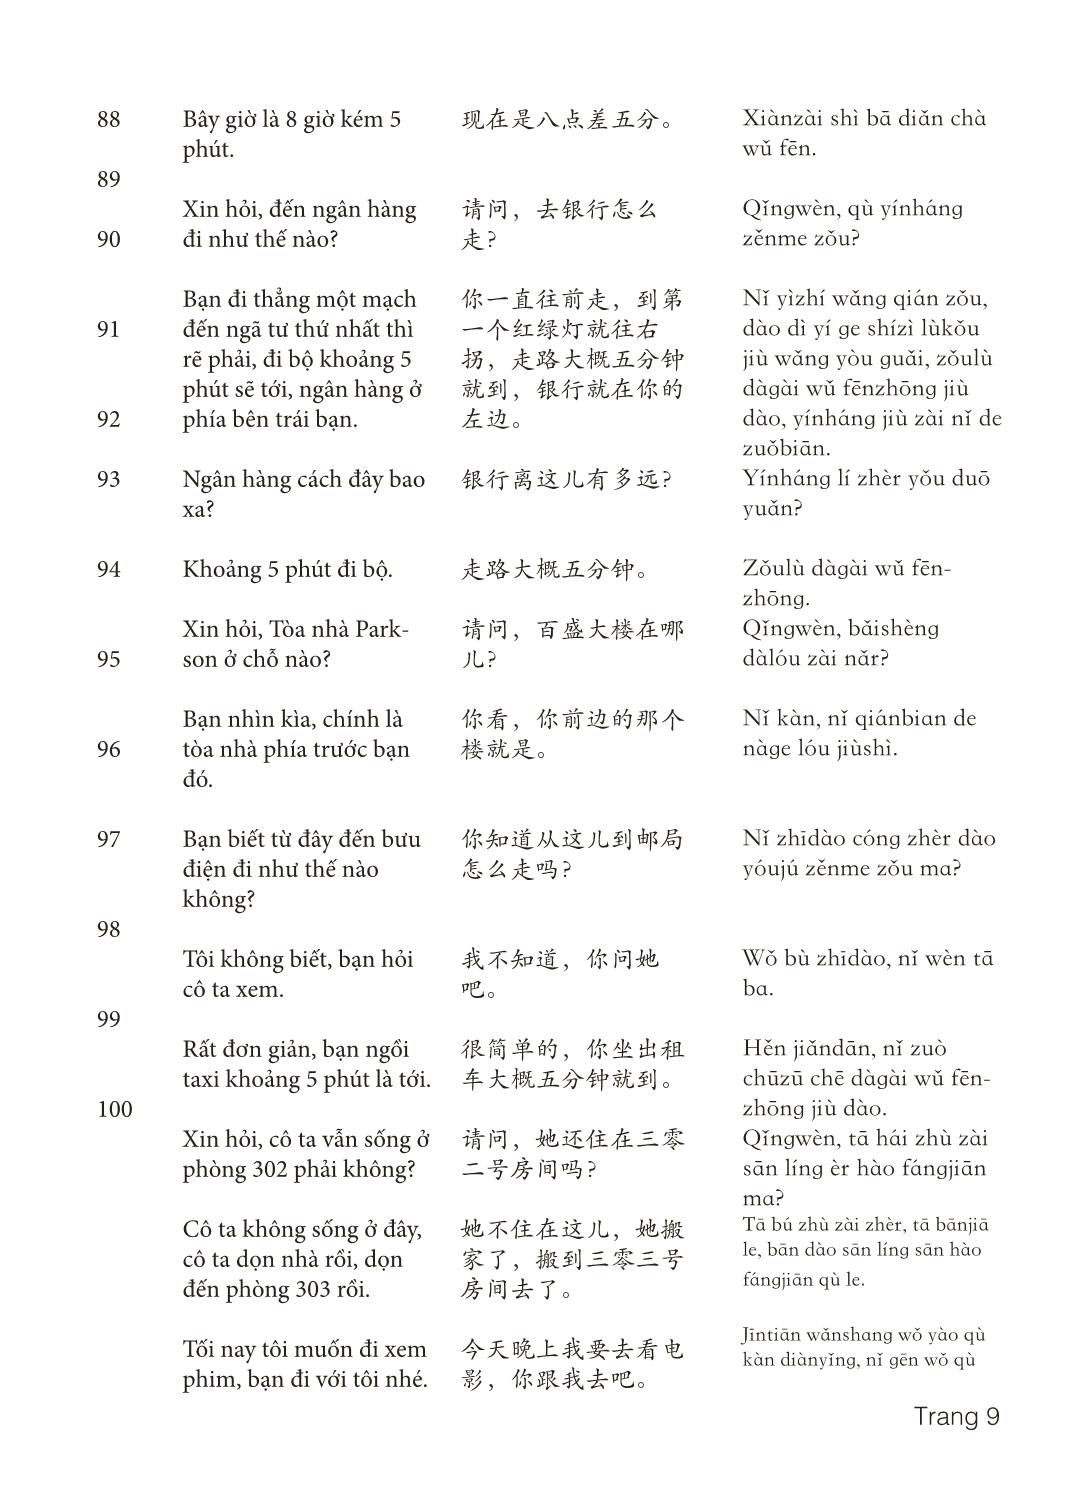 3000 Câu đàm thoại tiếng Hoa - Phần 3 trang 9